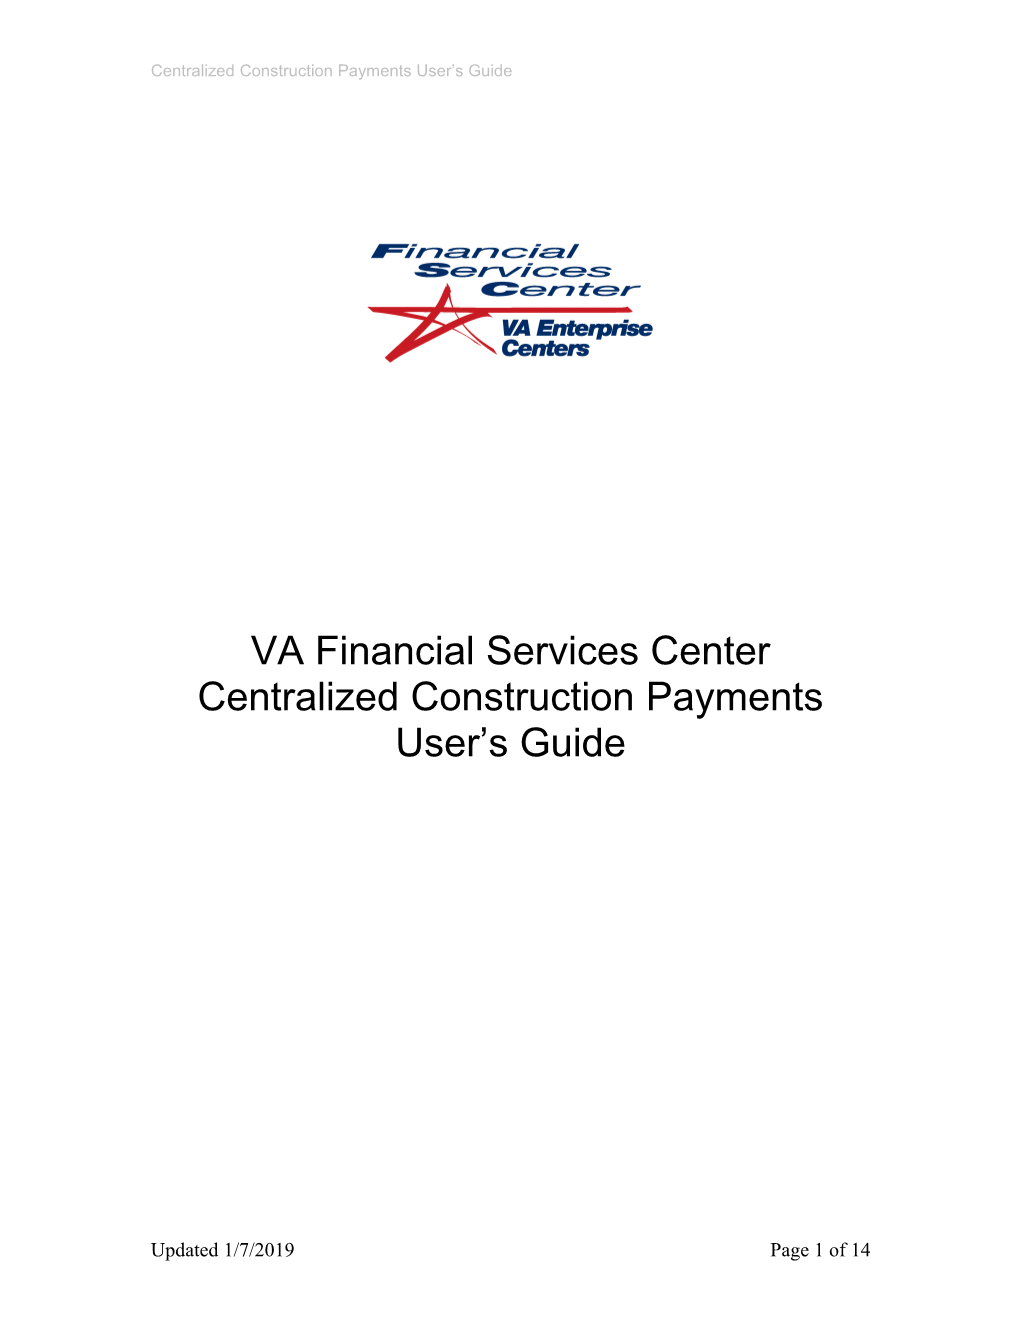 VA Financial Services Center